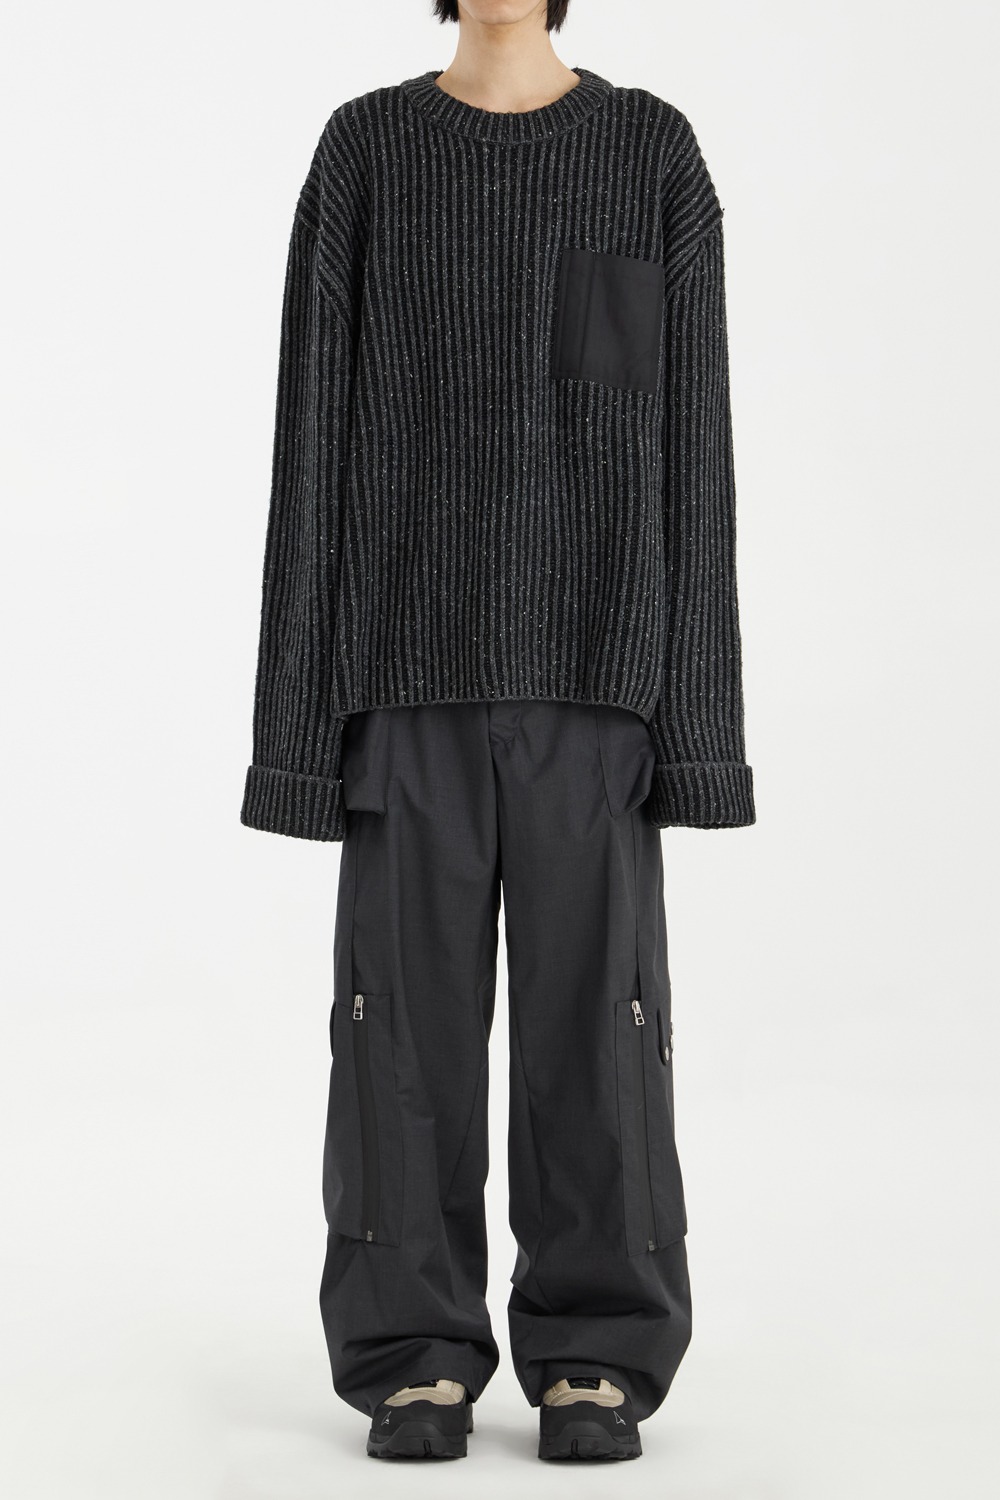 Pesci Sweater - Black/Grey